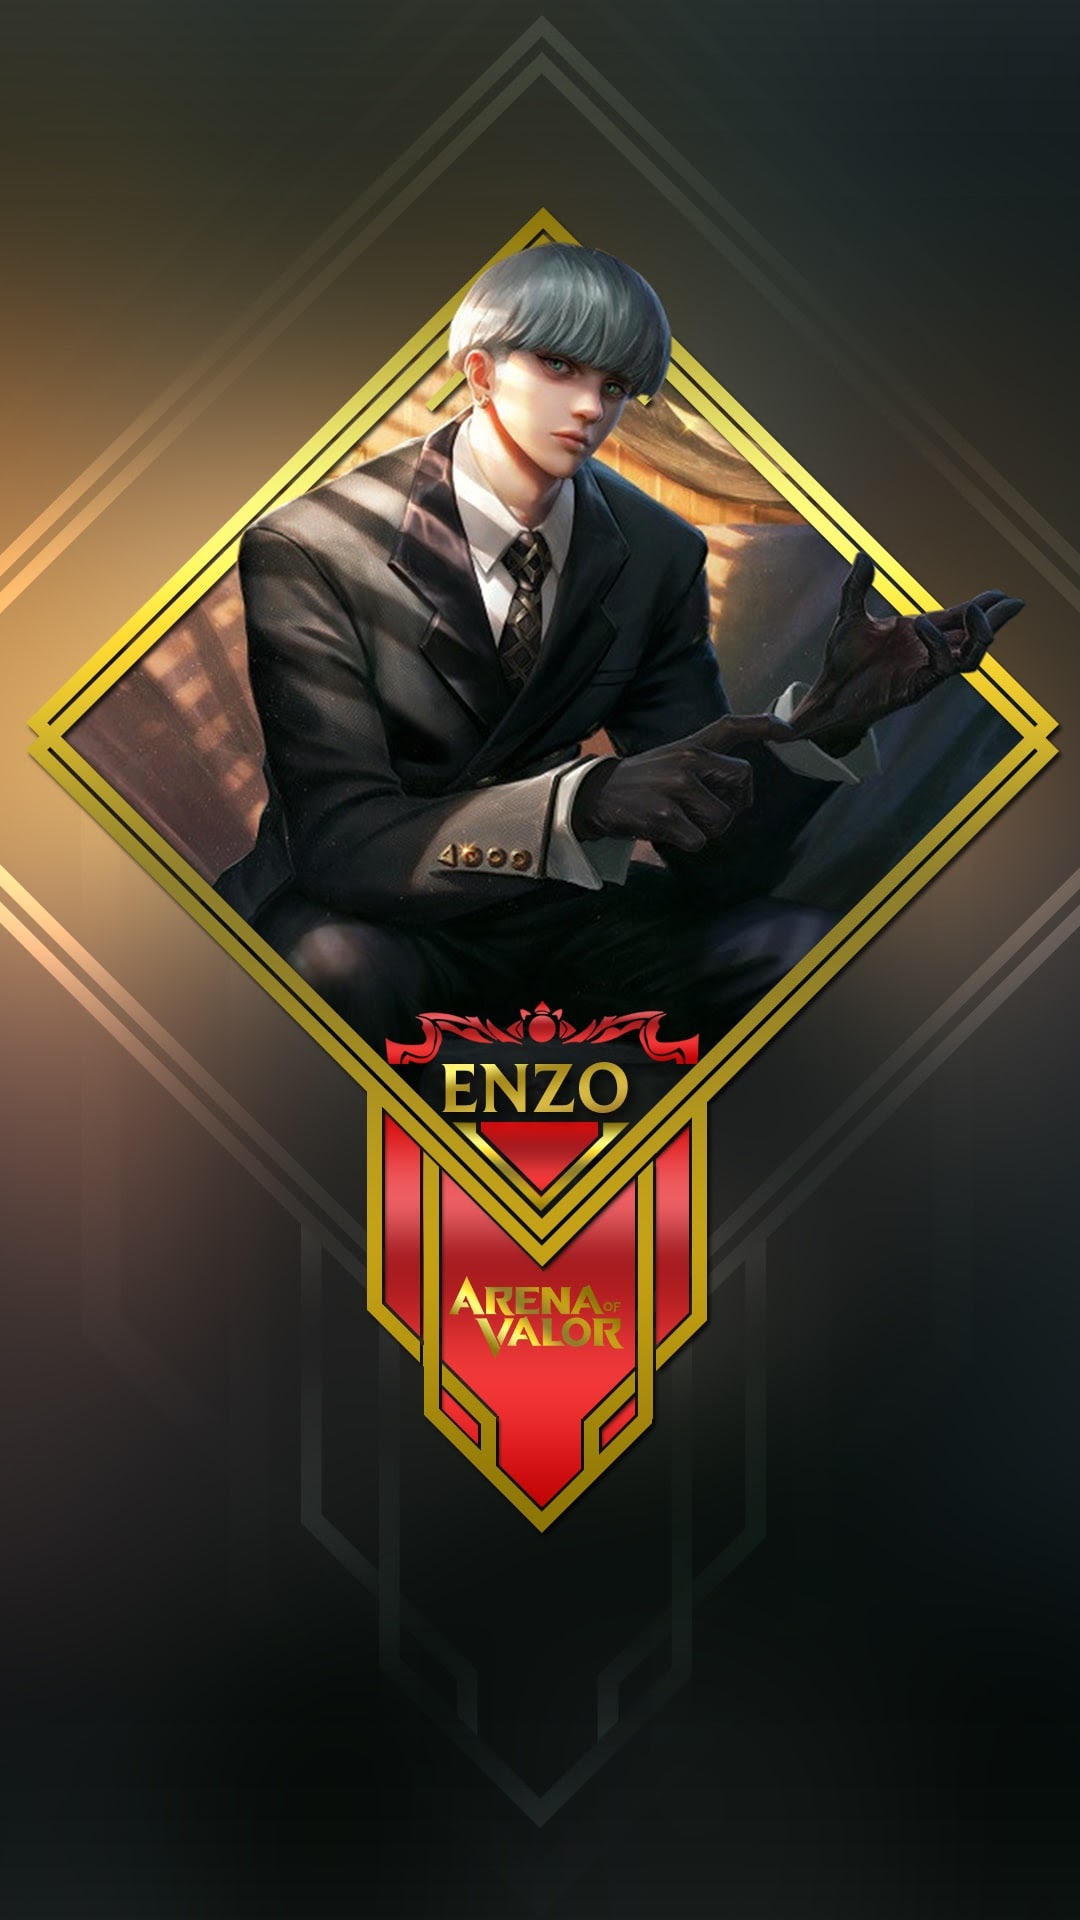 Hình nền Liên Quân Enzo có thể kết hợp một cách hoàn hảo giữa đường nét tuyệt đẹp của tướng và màu sắc tươi trẻ để tạo ra một bức hình nền độc đáo và quyến rũ. Hãy thưởng thức vẻ đẹp của Enzo thông qua màn hình điện thoại của bạn với hình nền độc đáo này.